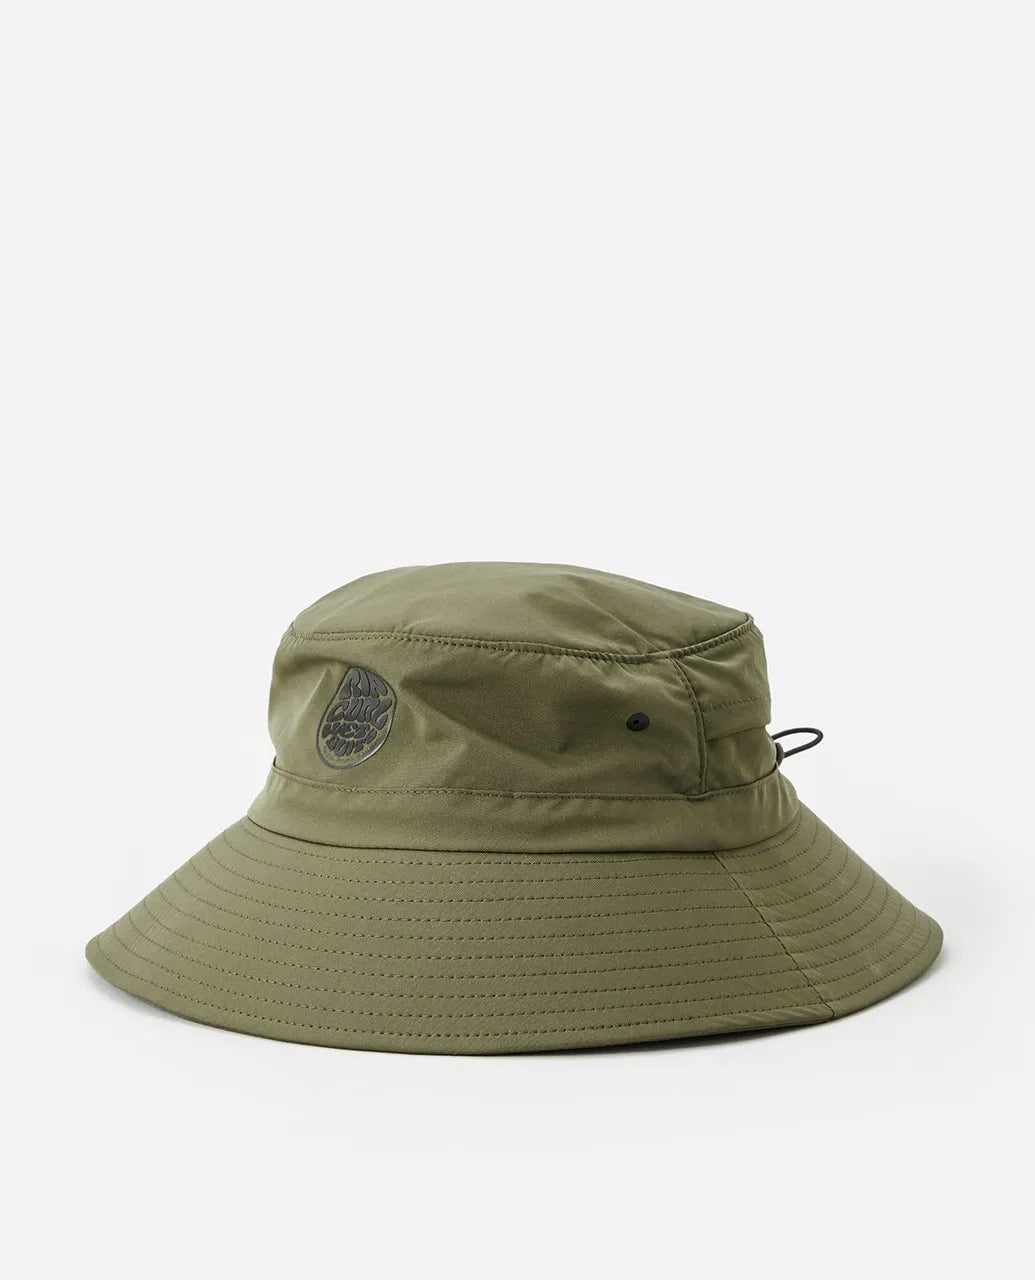 Ripcurl Surf Series Bucket Hat Hats Dark Olive S-M